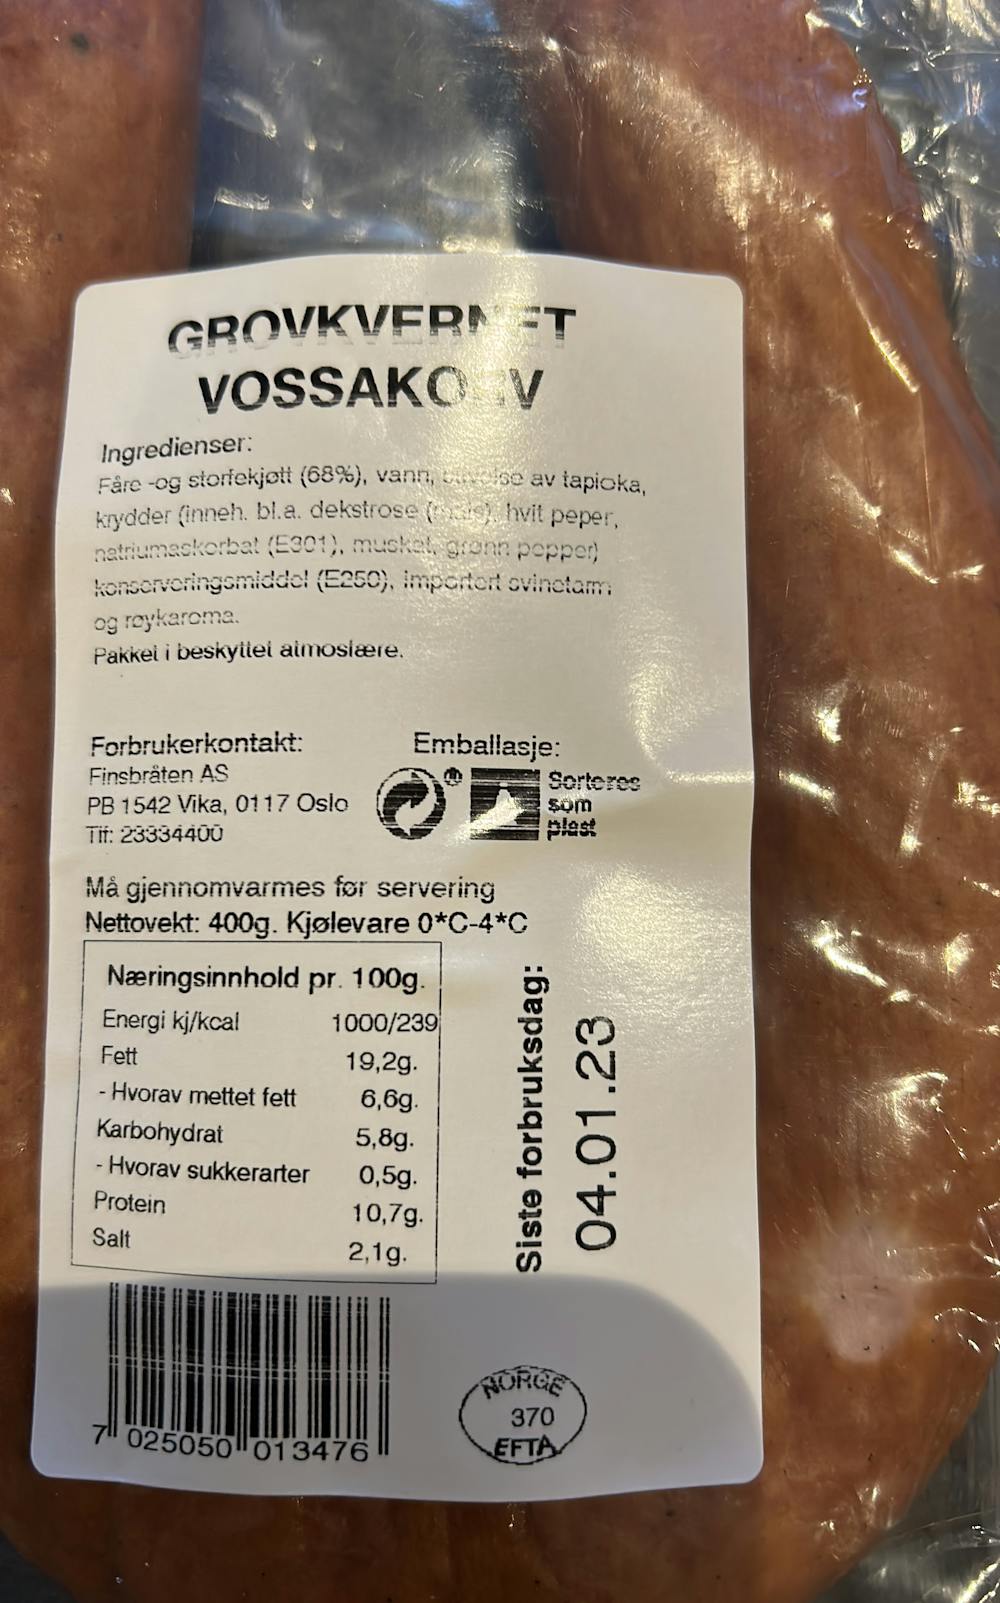 Ingrediensliste - Vossakorv av fårekjøtt, Finsbråten